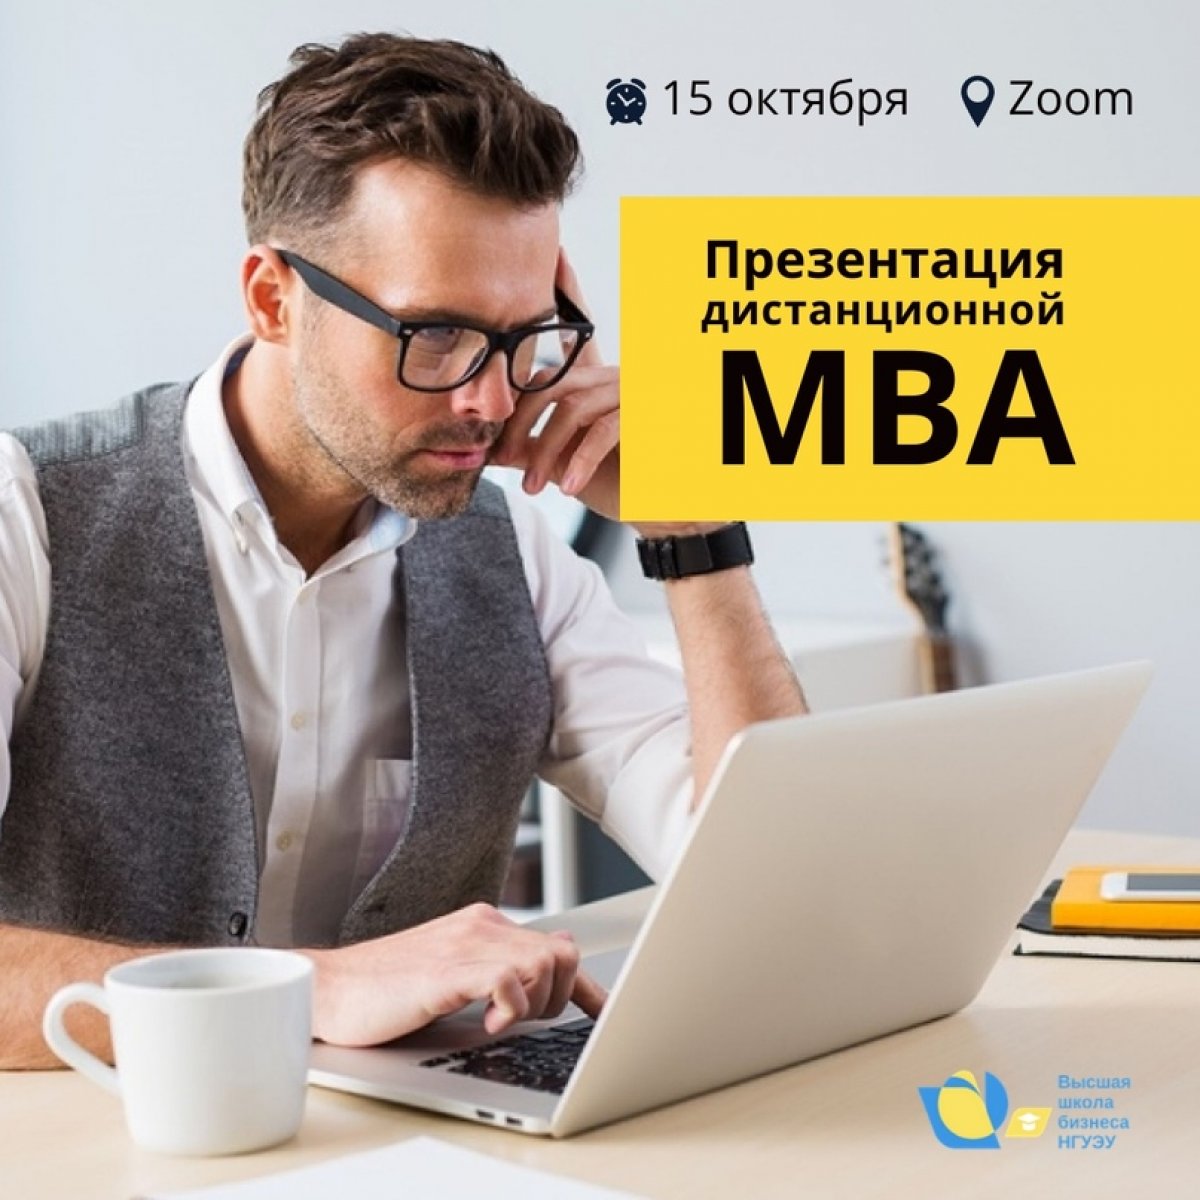 💼 Хотите "прокачать" управленческие навыки на программе MBA, но живете не в Новосибирске или нет времени посещать очные занятия?